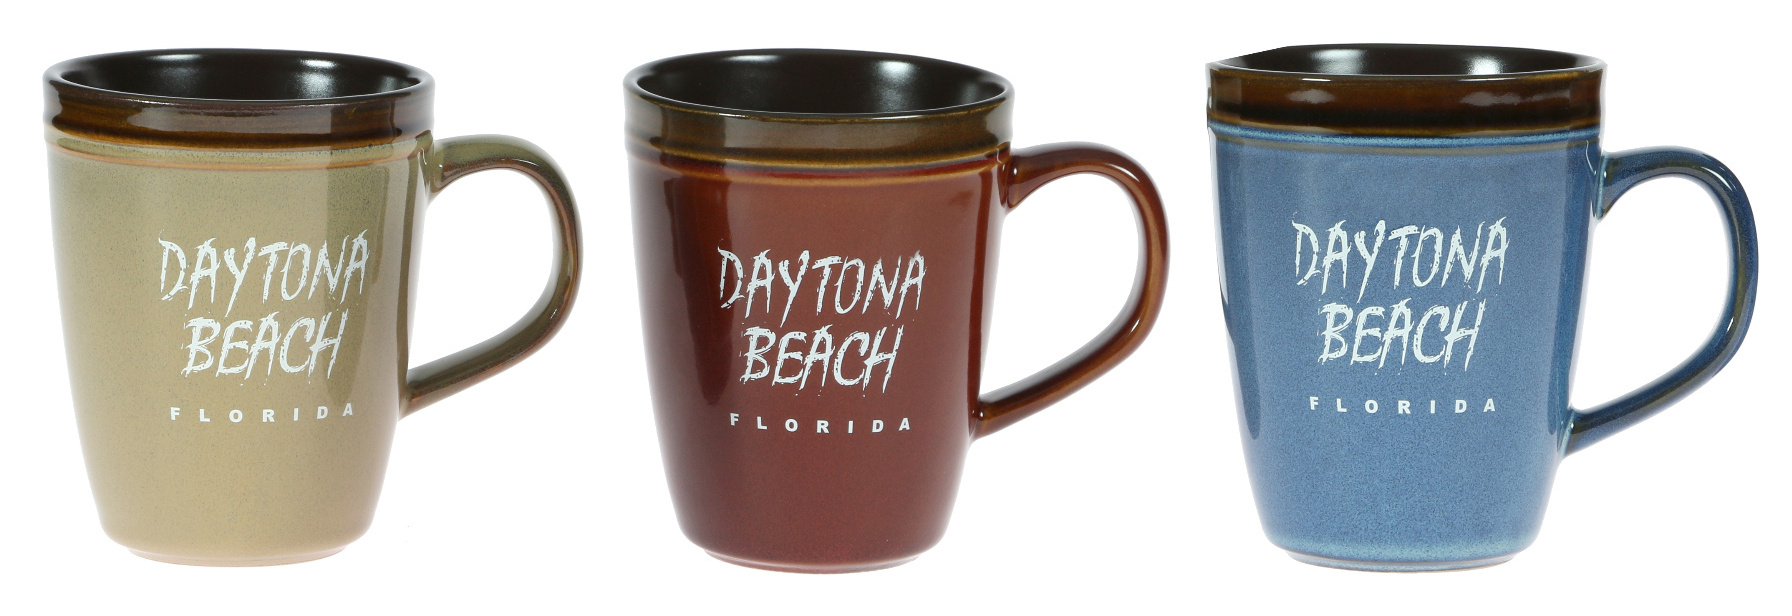 Daytona Beach Mugs